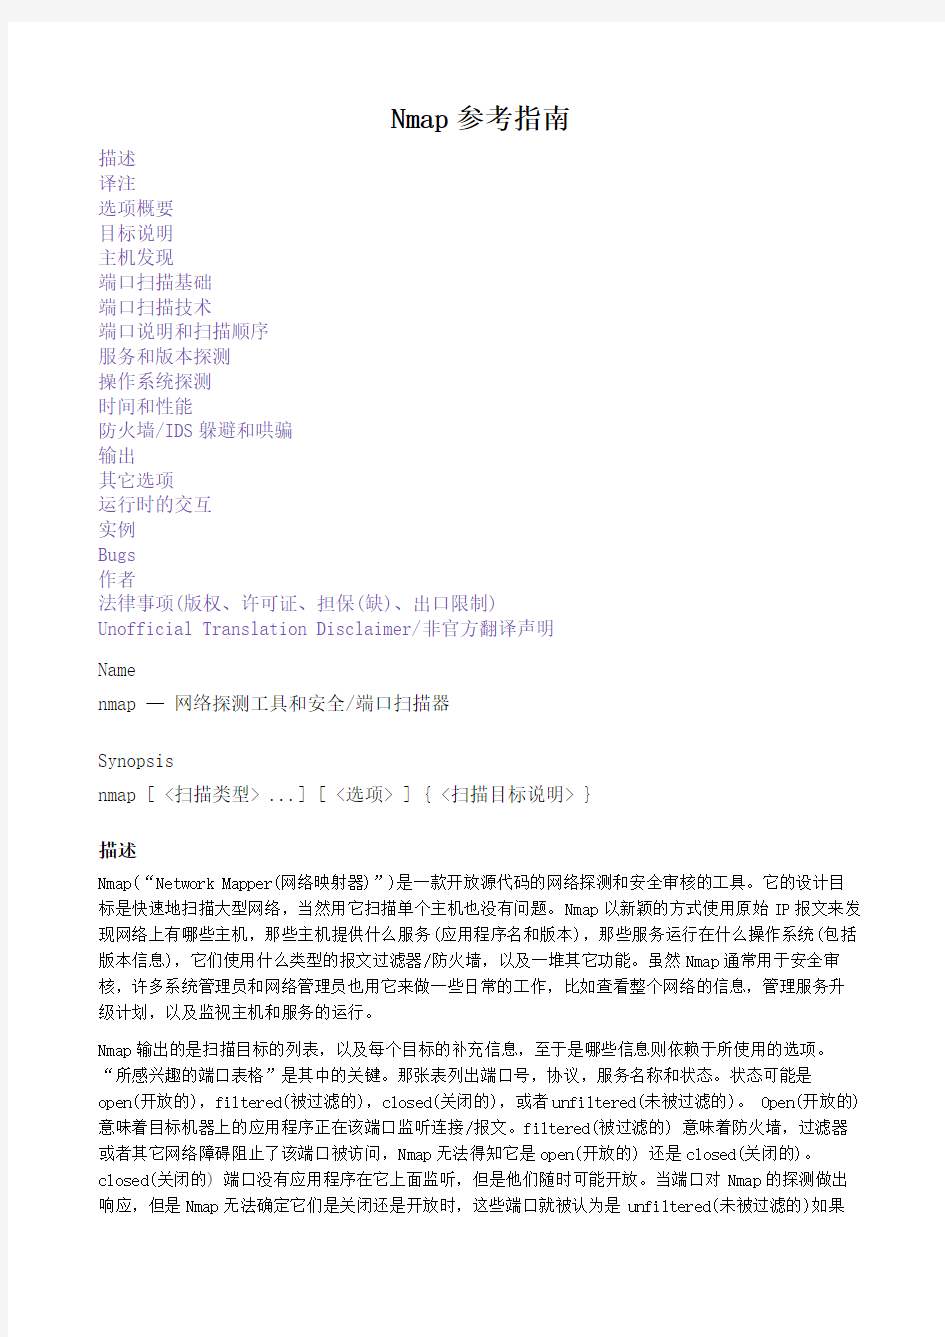 Nmap参考指南(官方文档)